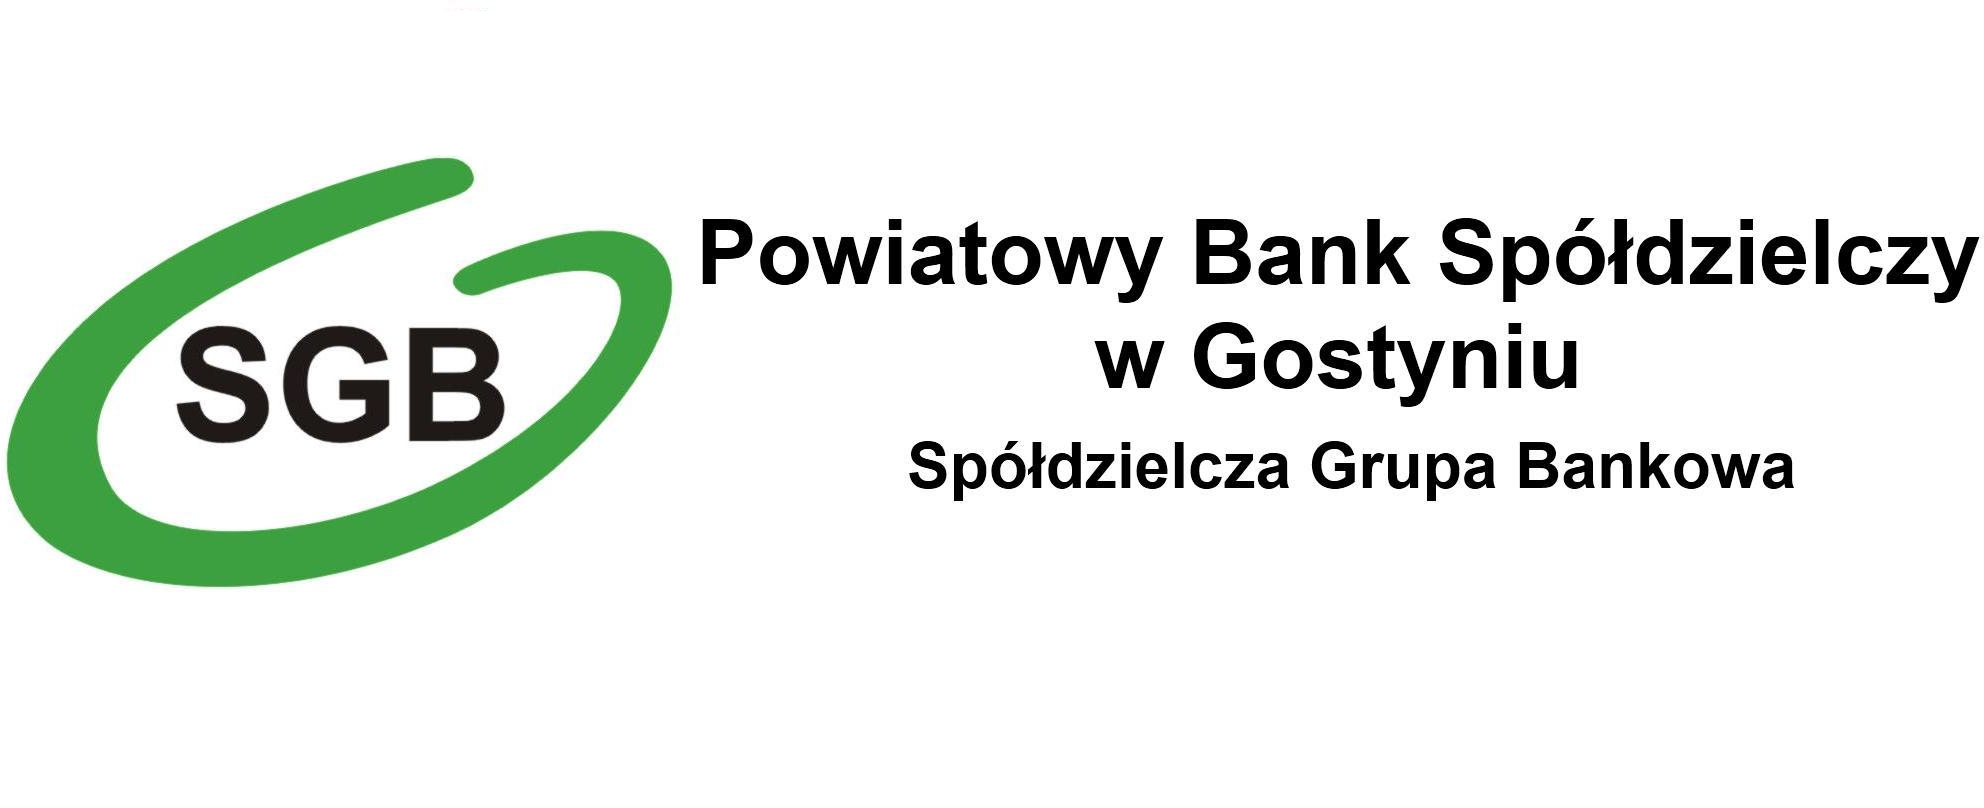 Usługa mojeID w PBS w Gostyniu - Powiatowy Bank Spółdzielczy w Gostyniu